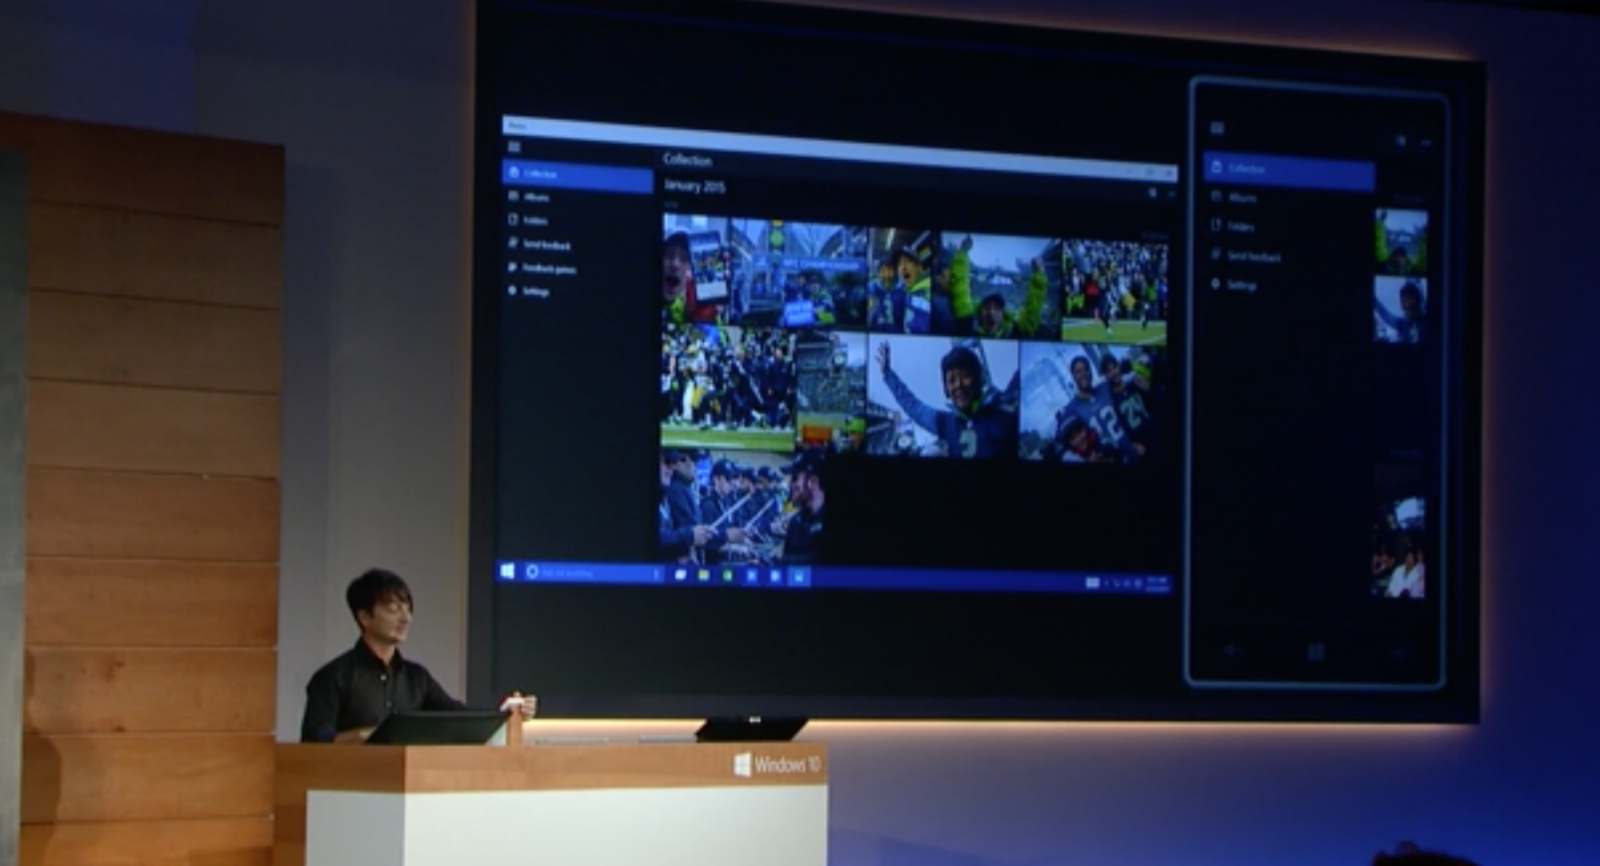 New Photos app for Windows 10